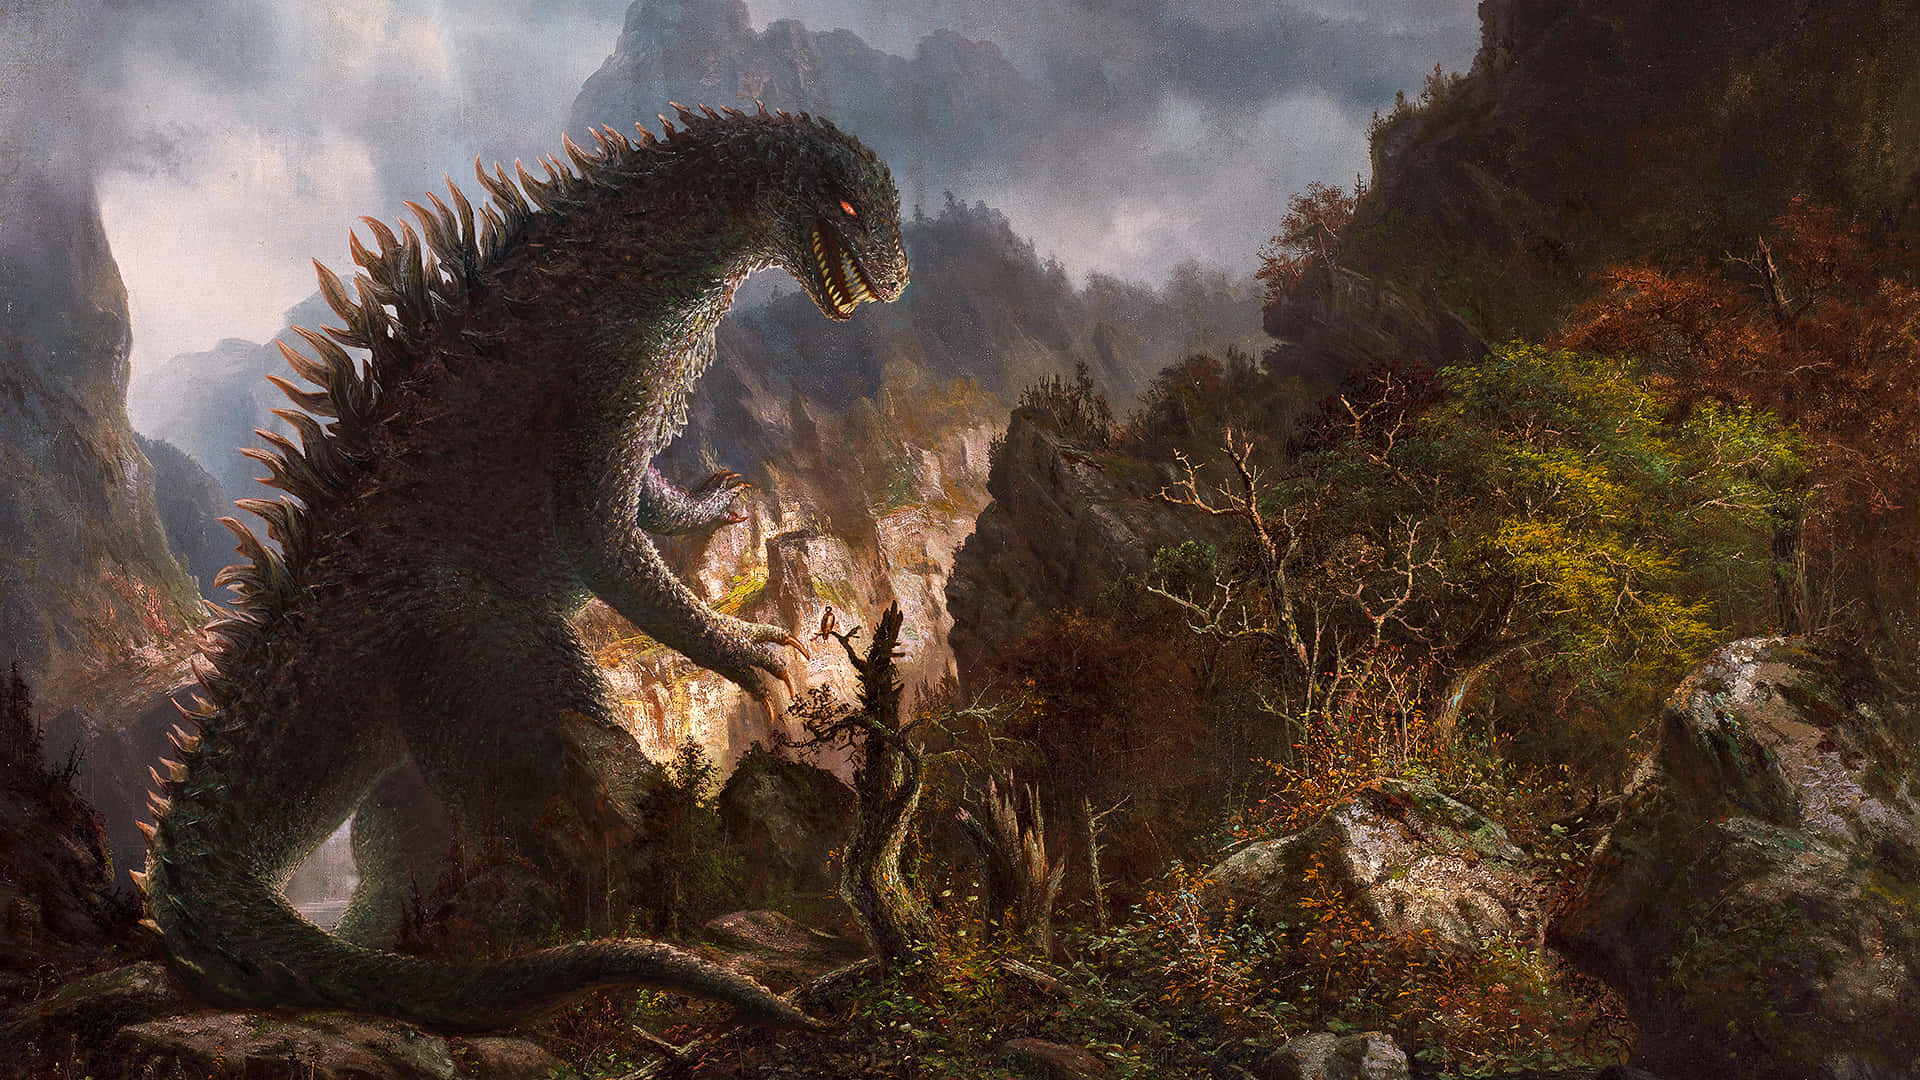 Godzillanell'immagine D'arte Della Foresta Di Montagna.